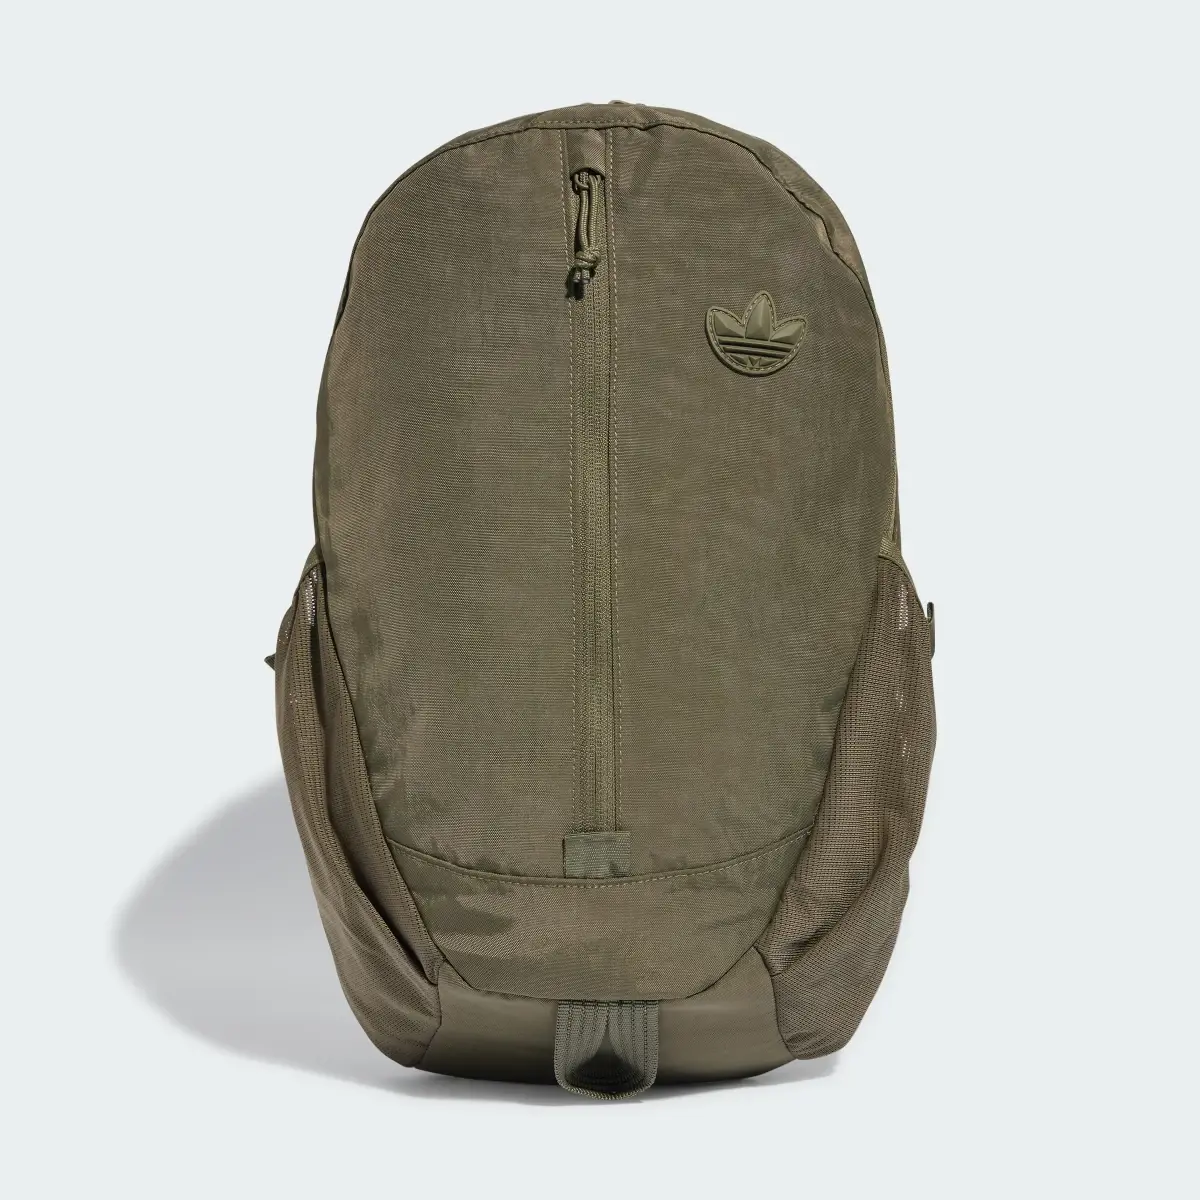 Adidas Adventure Backpack. 1